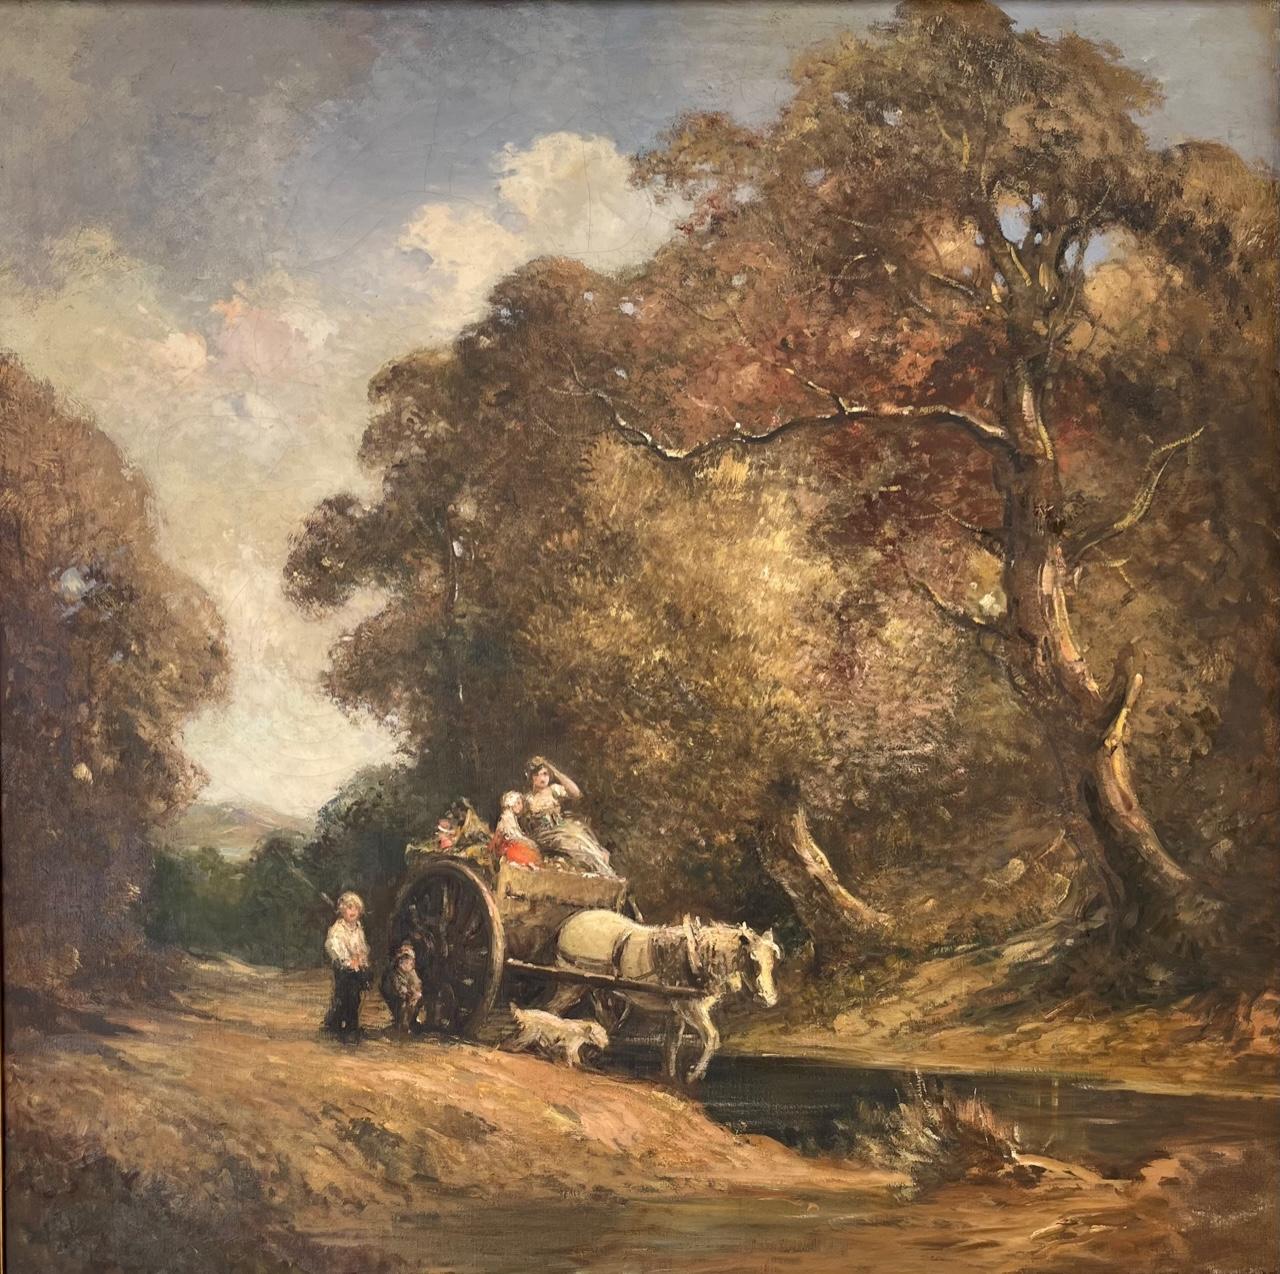 Peinture à l'huile de paysage romantique de genre anglais dans un cadre Newcomb-Macklin.

Ce magnifique grand tableau, datant d'environ 1900, définit l'art paysager britannique. Elle dépeint les activités ordinaires de la vie quotidienne sur fond